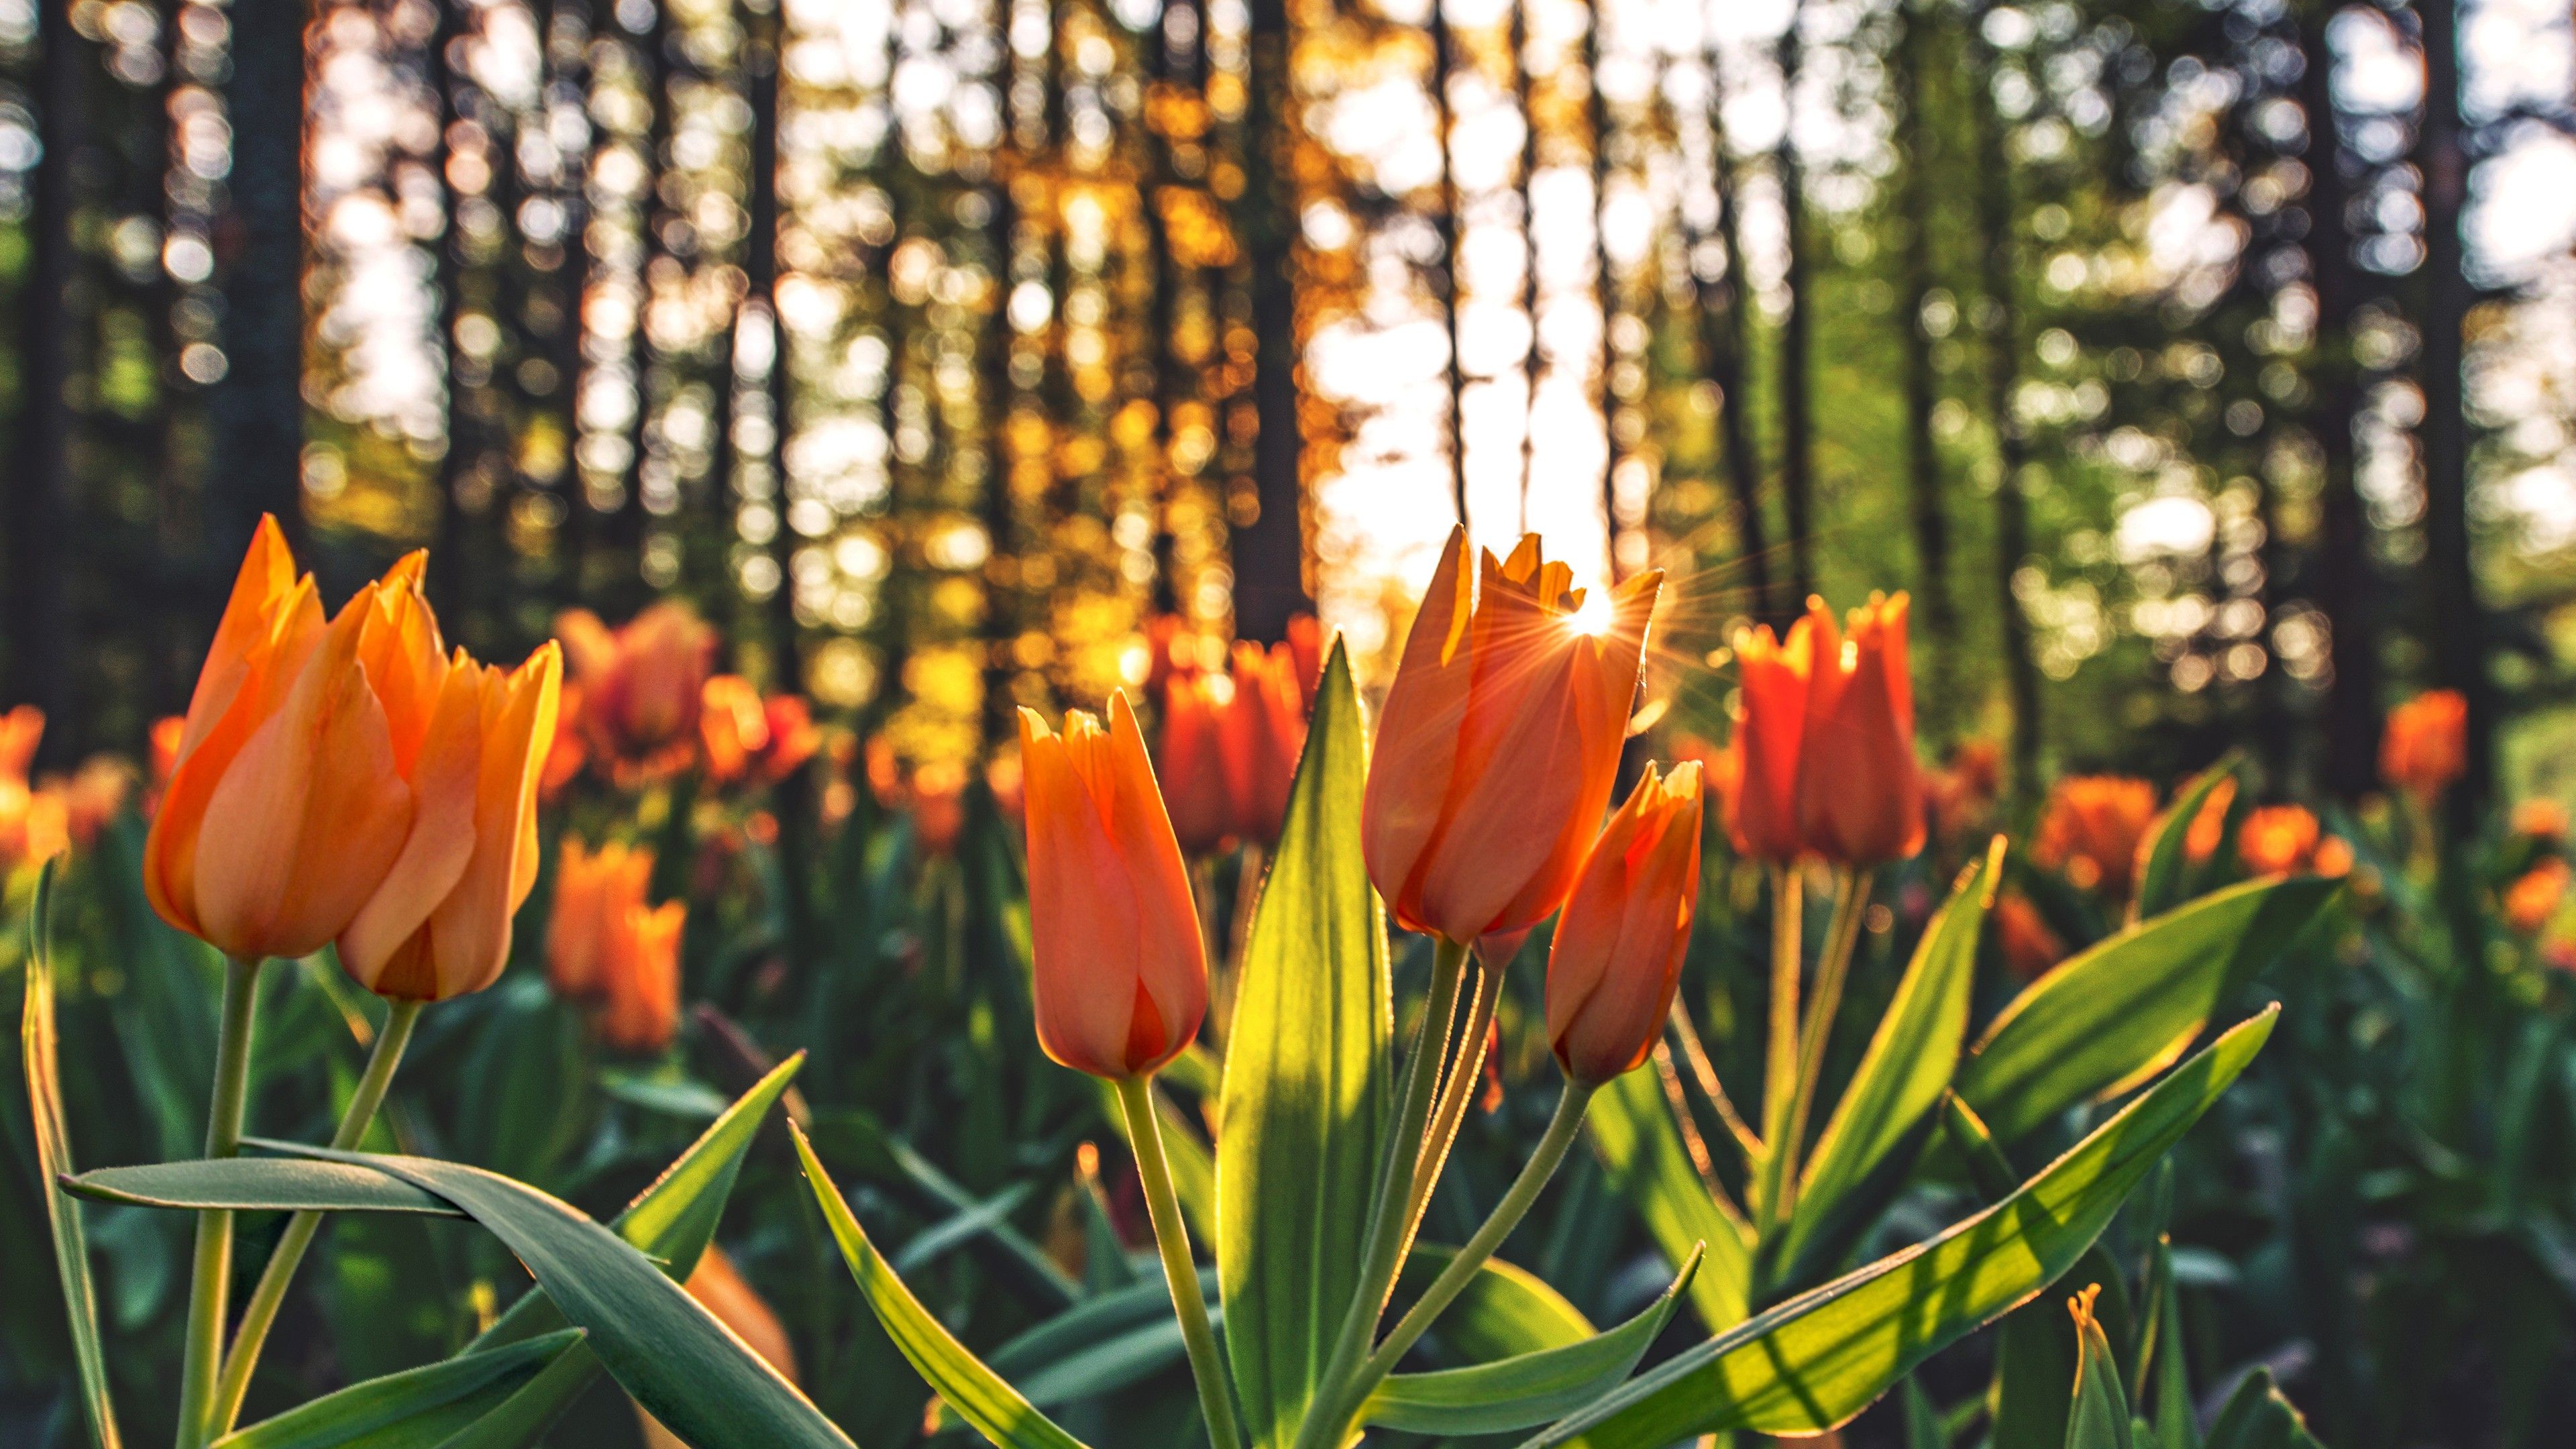 Orange Tulips Hd, HD Flowers, 4k Wallpaper, Image, Background